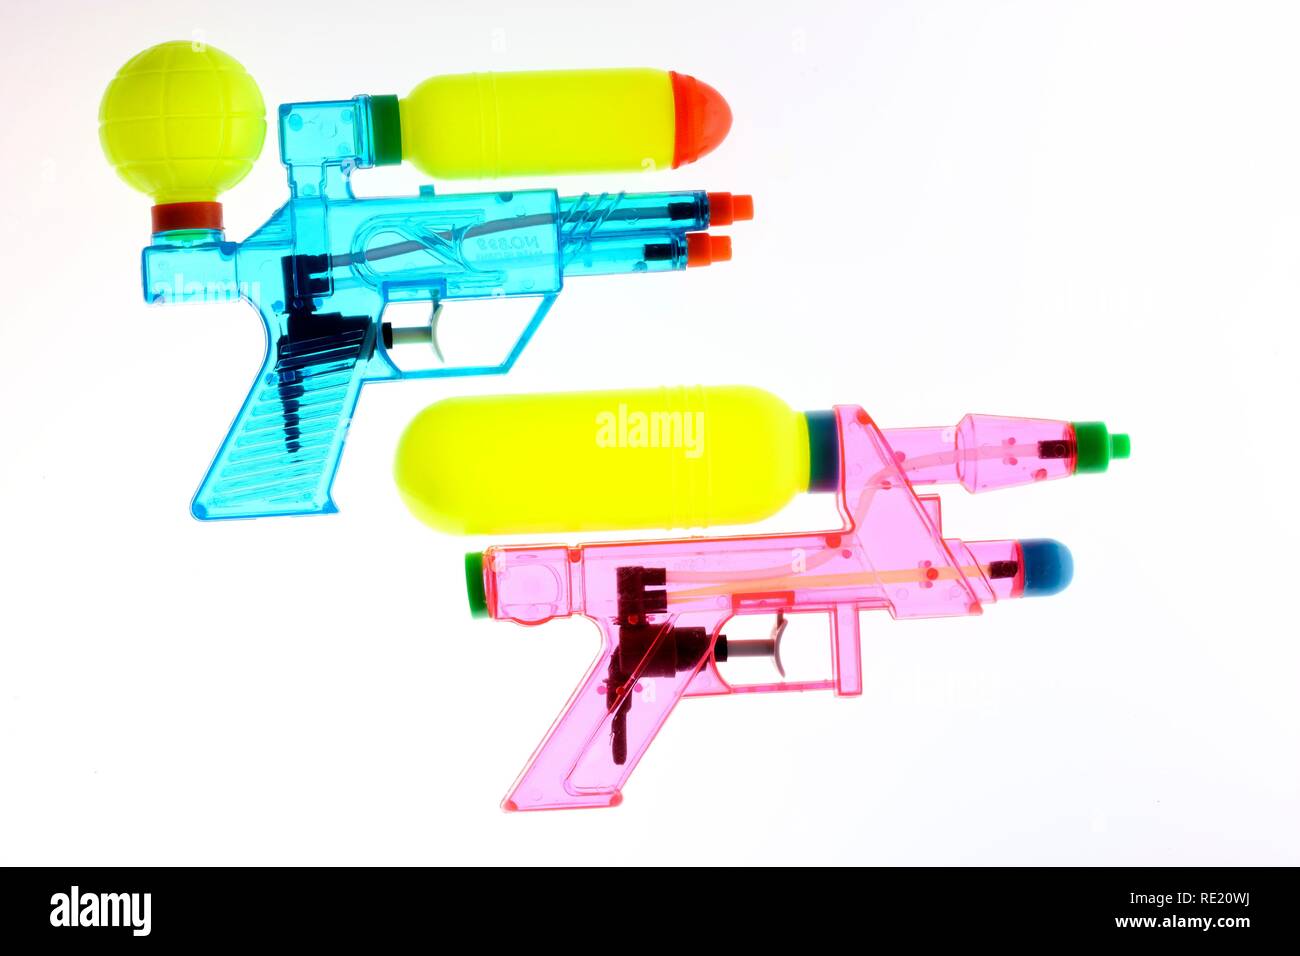 Toy guns, pistolets à eau pompe Banque D'Images